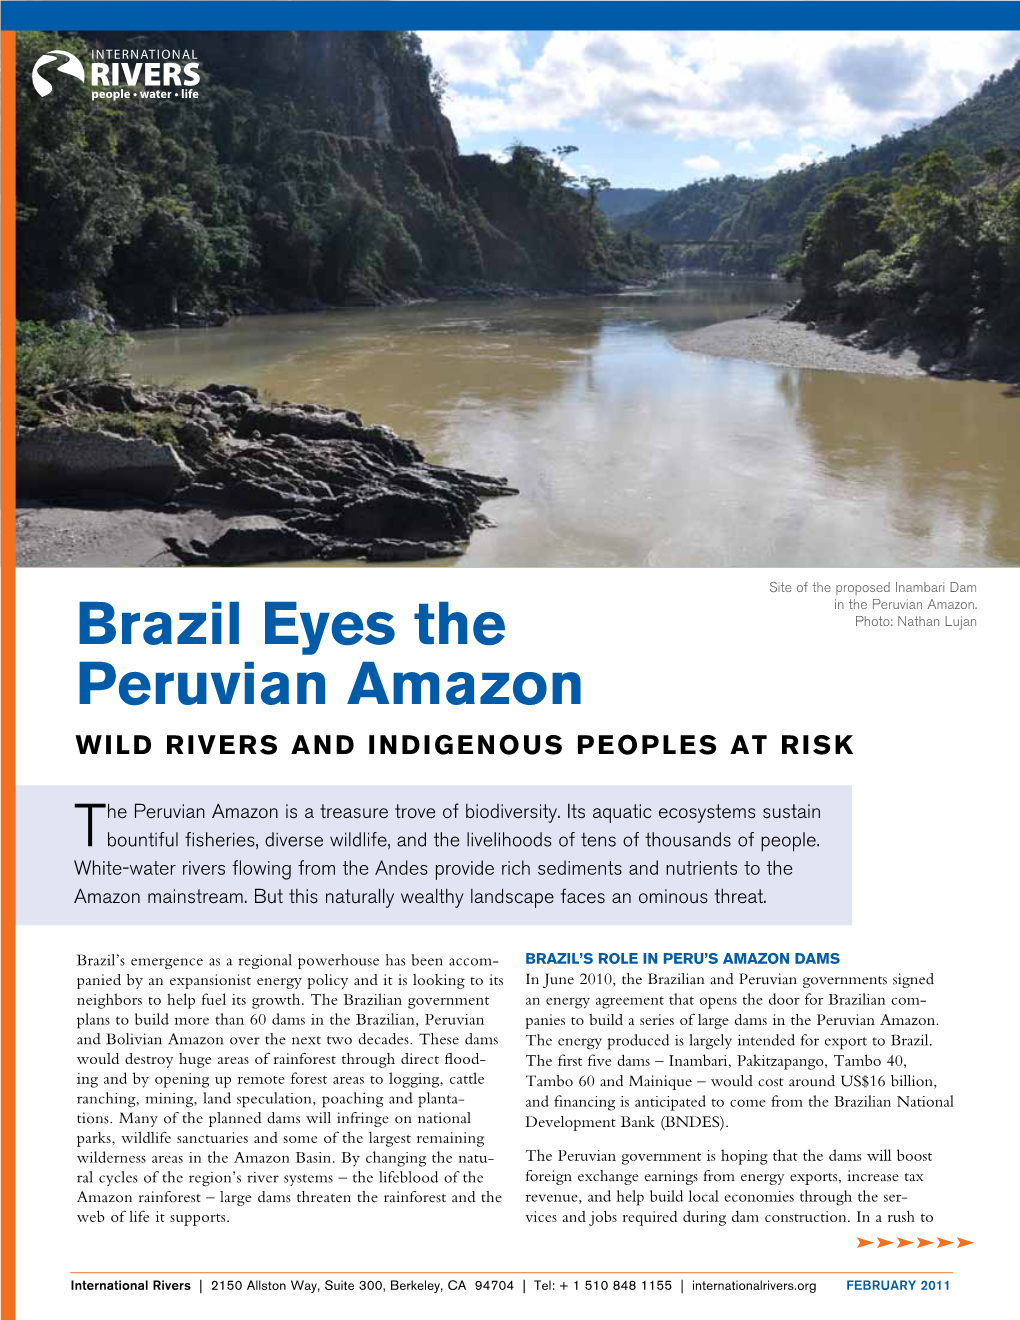 Brazil Eyes the Peruvian Amazon